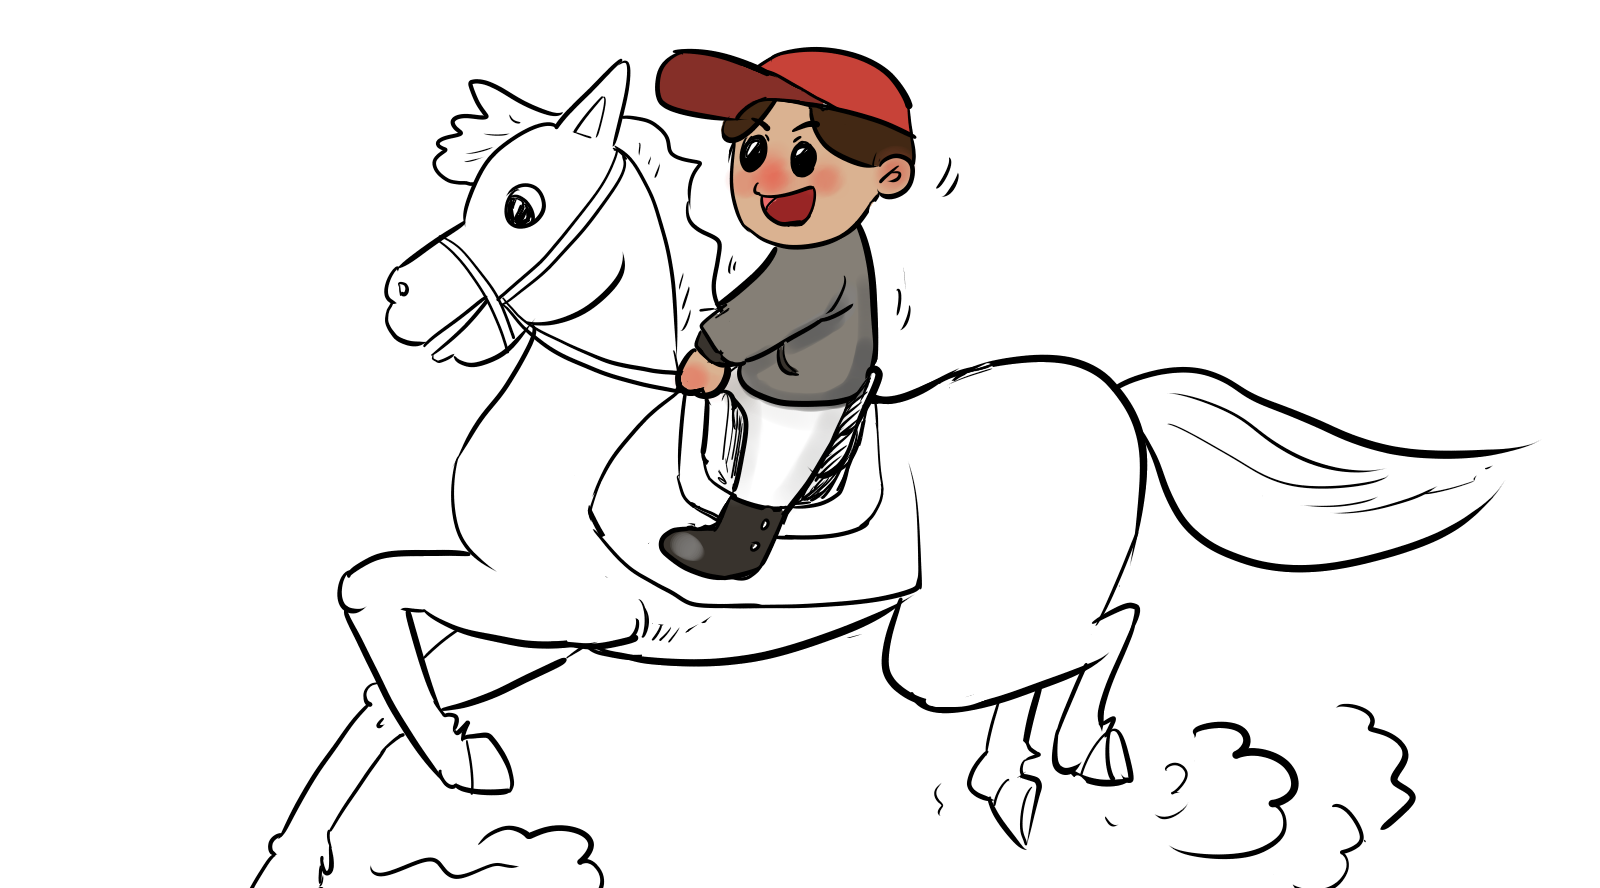 霖山老师教你画儿童文学作品插画:骑马